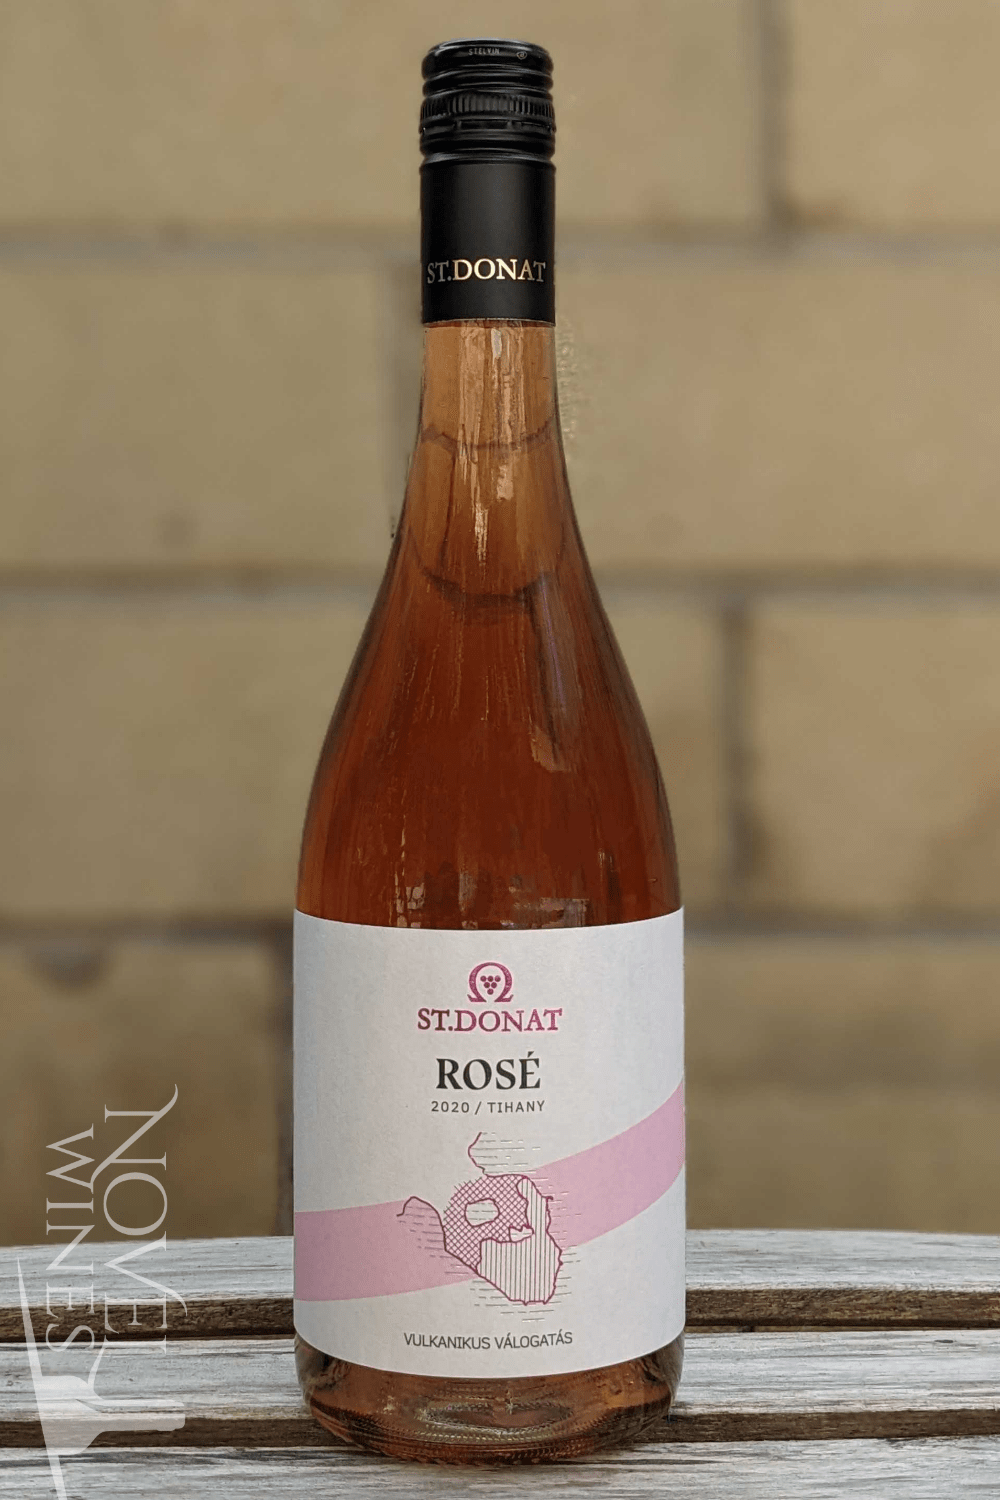 St. Donat Wine Estate Rose Wine St. Donat Tihany Rose 2020, Hungary